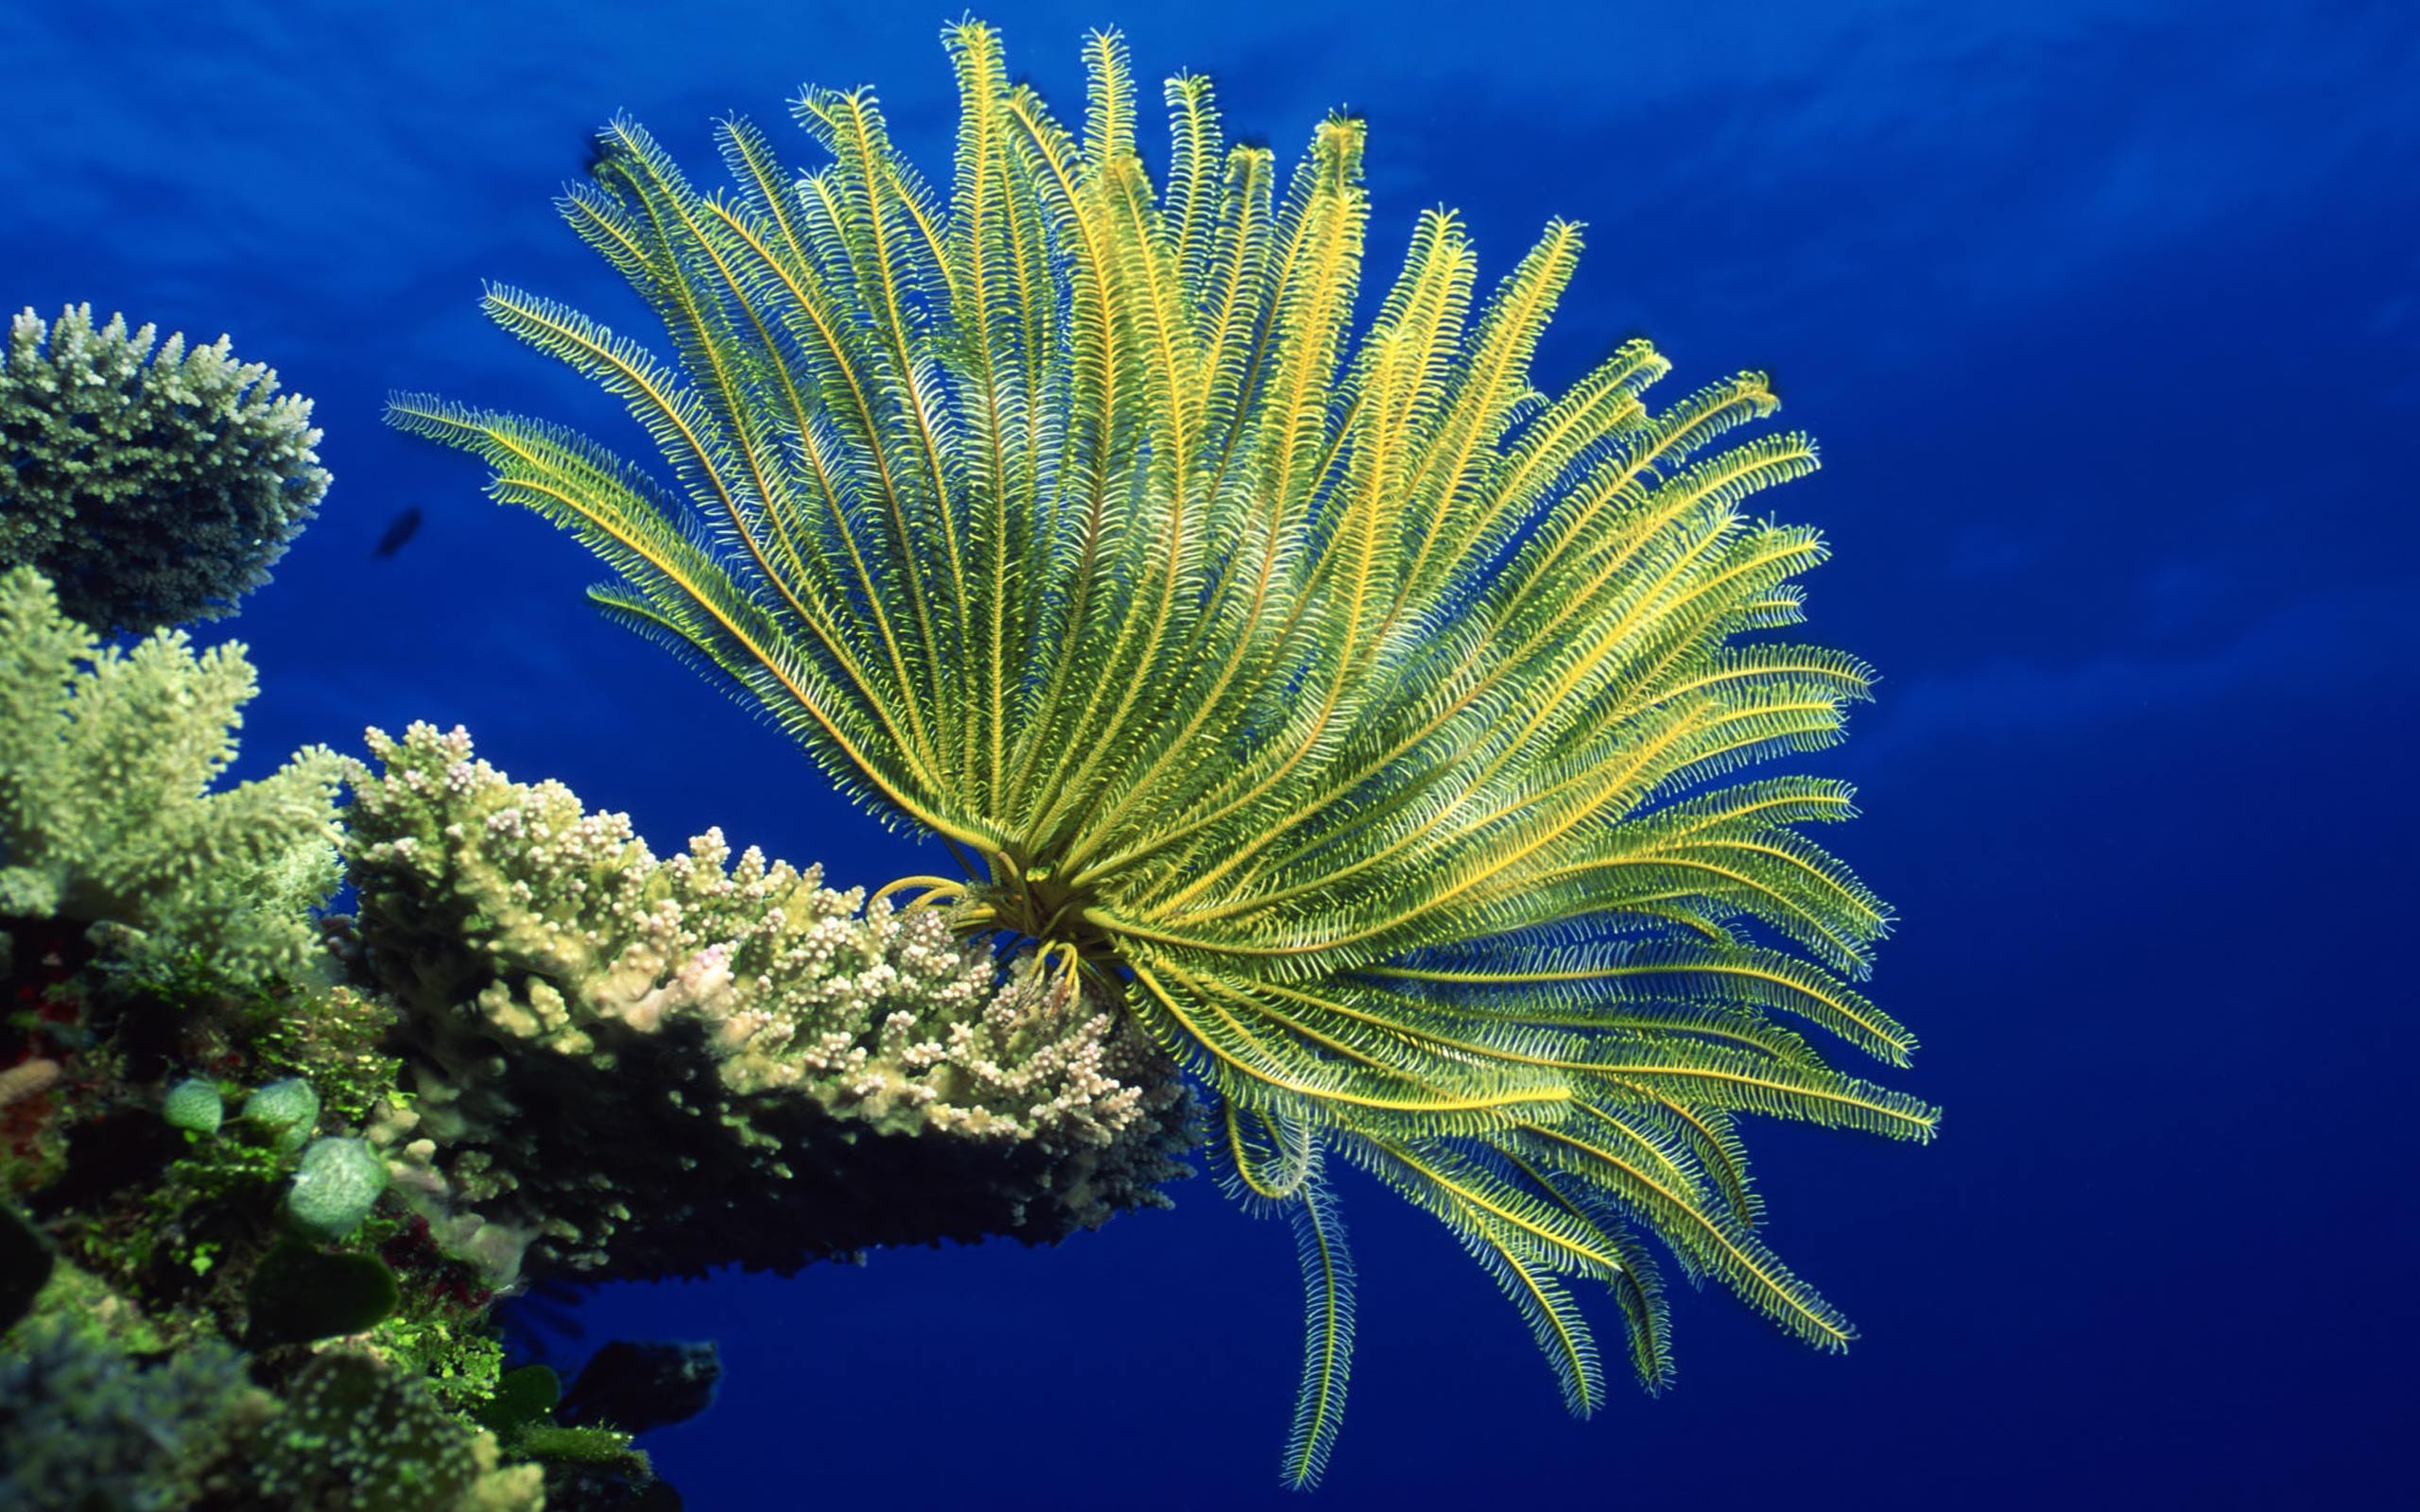 Desktop Wallpaper · Gallery · Animals · Sea anemones - Coral reef ...